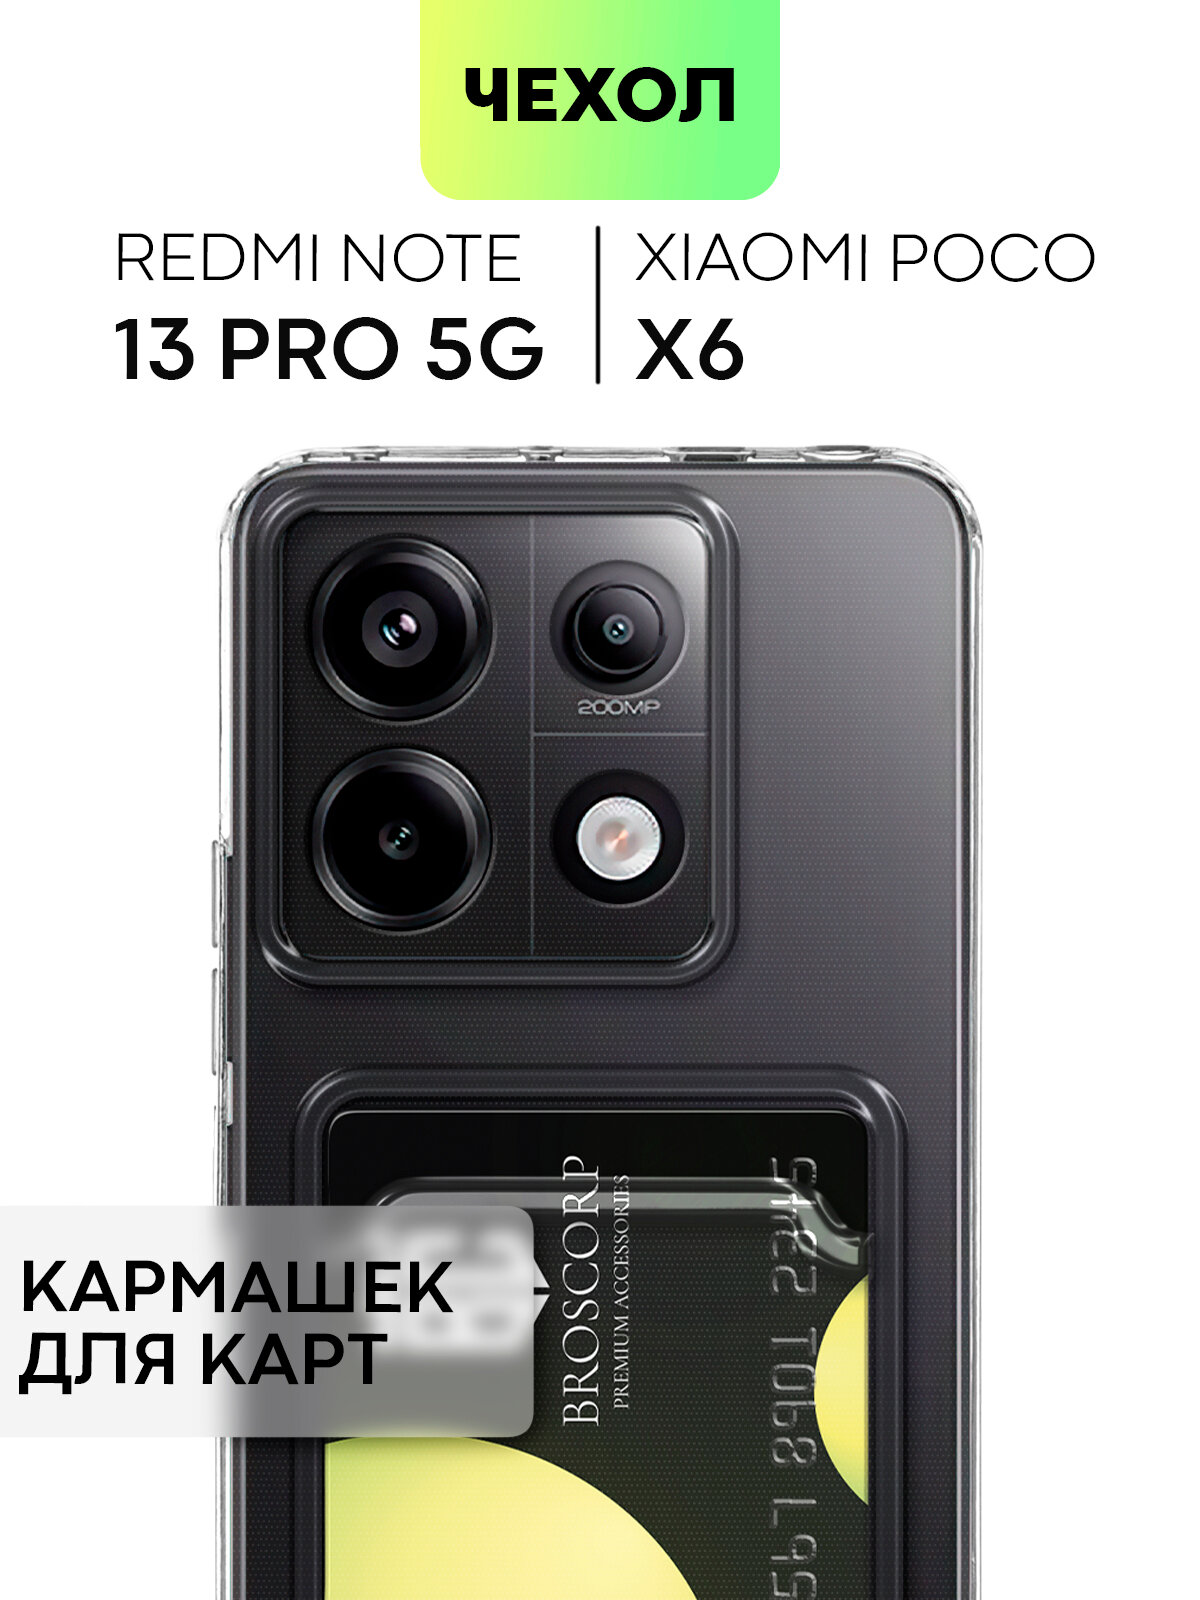 Чехол с кармашком на Poco X6 и Redmi Note 13 Pro 5G (Поко Х6, Редми Ноут 13 Про 5Г) силиконовый чехол, защита камер, для карты, картхолдер, прозрачный